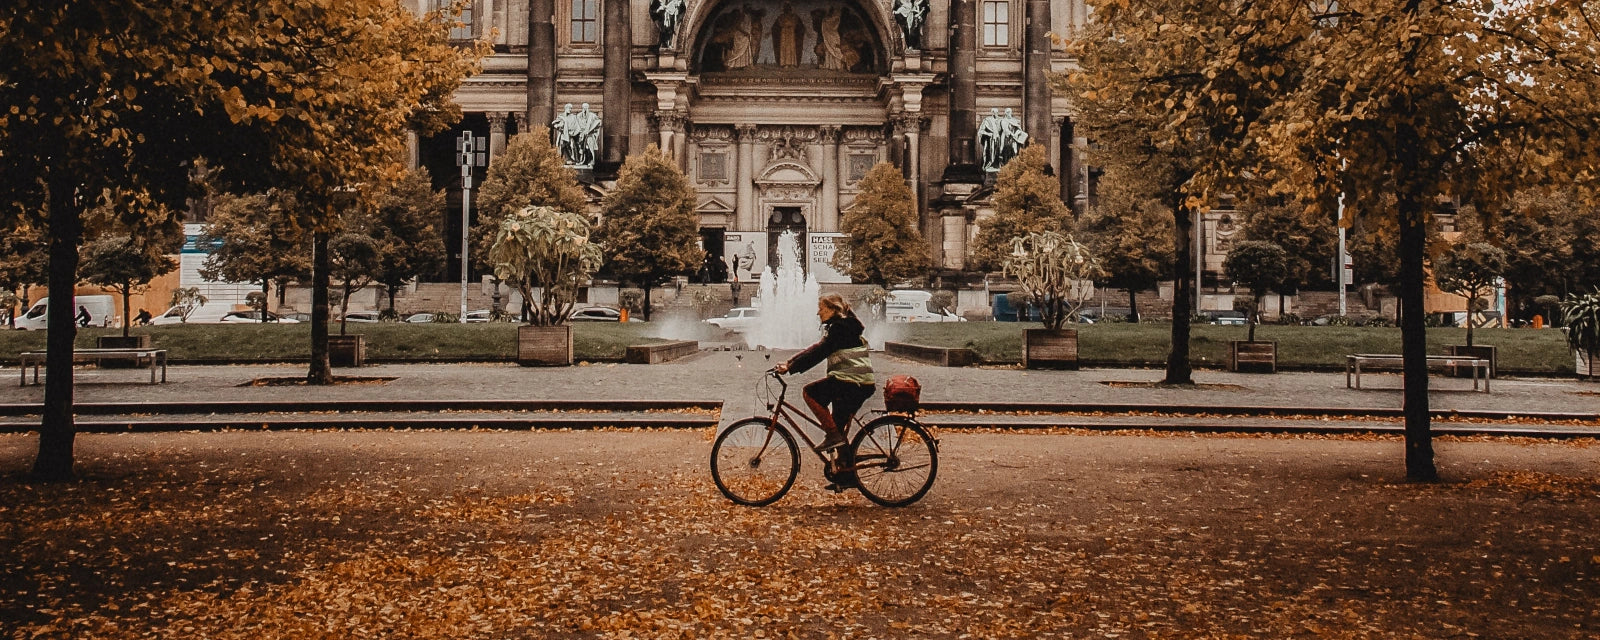 Frau mit dem Fahrrad nachhaltig durch die Stadt unterwegs